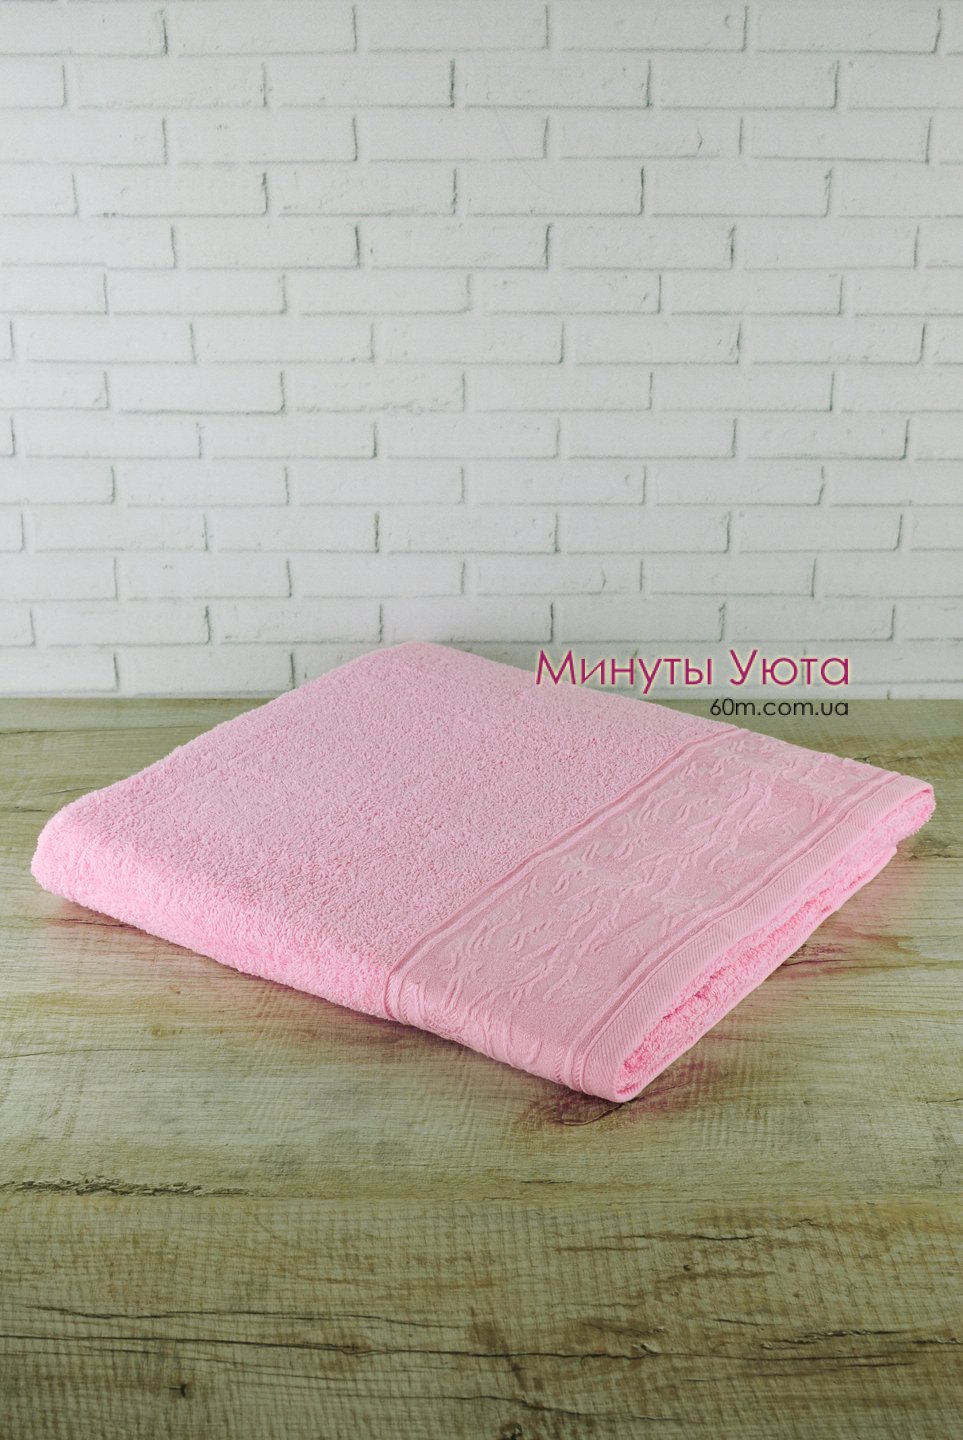 Хлопковое полотенце для сауны в розовом цвете 